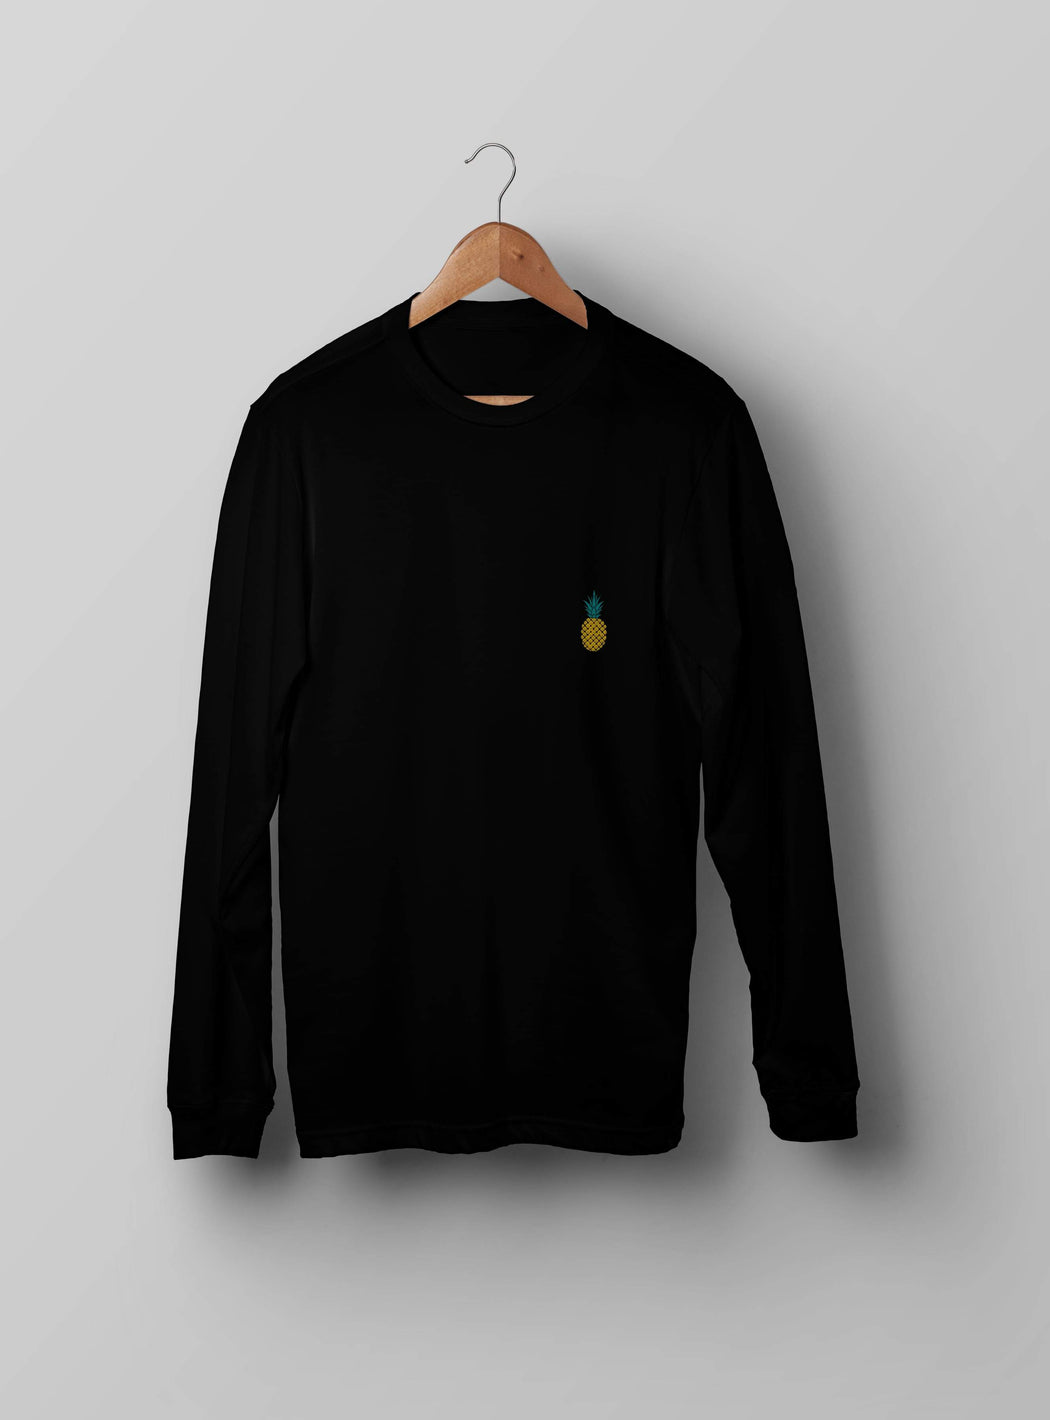 Pineapple Black Embroidered Sweatshirt - Kustom: Tees Factory